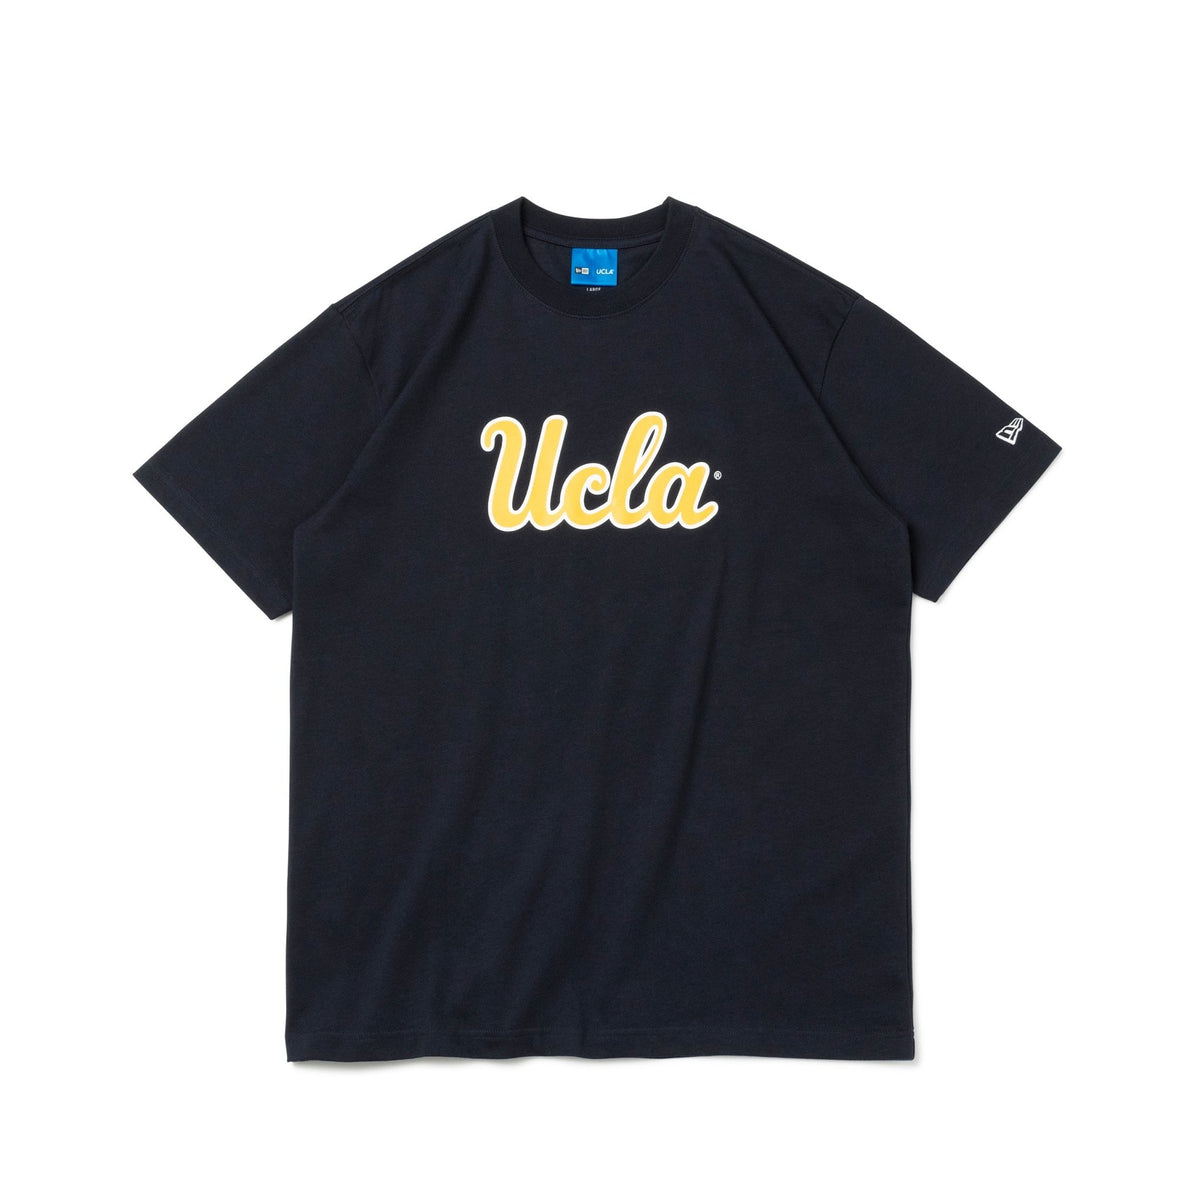 半袖 コットン Tシャツ UCLA キャンパスロゴ ネイビー レギュラーフィット